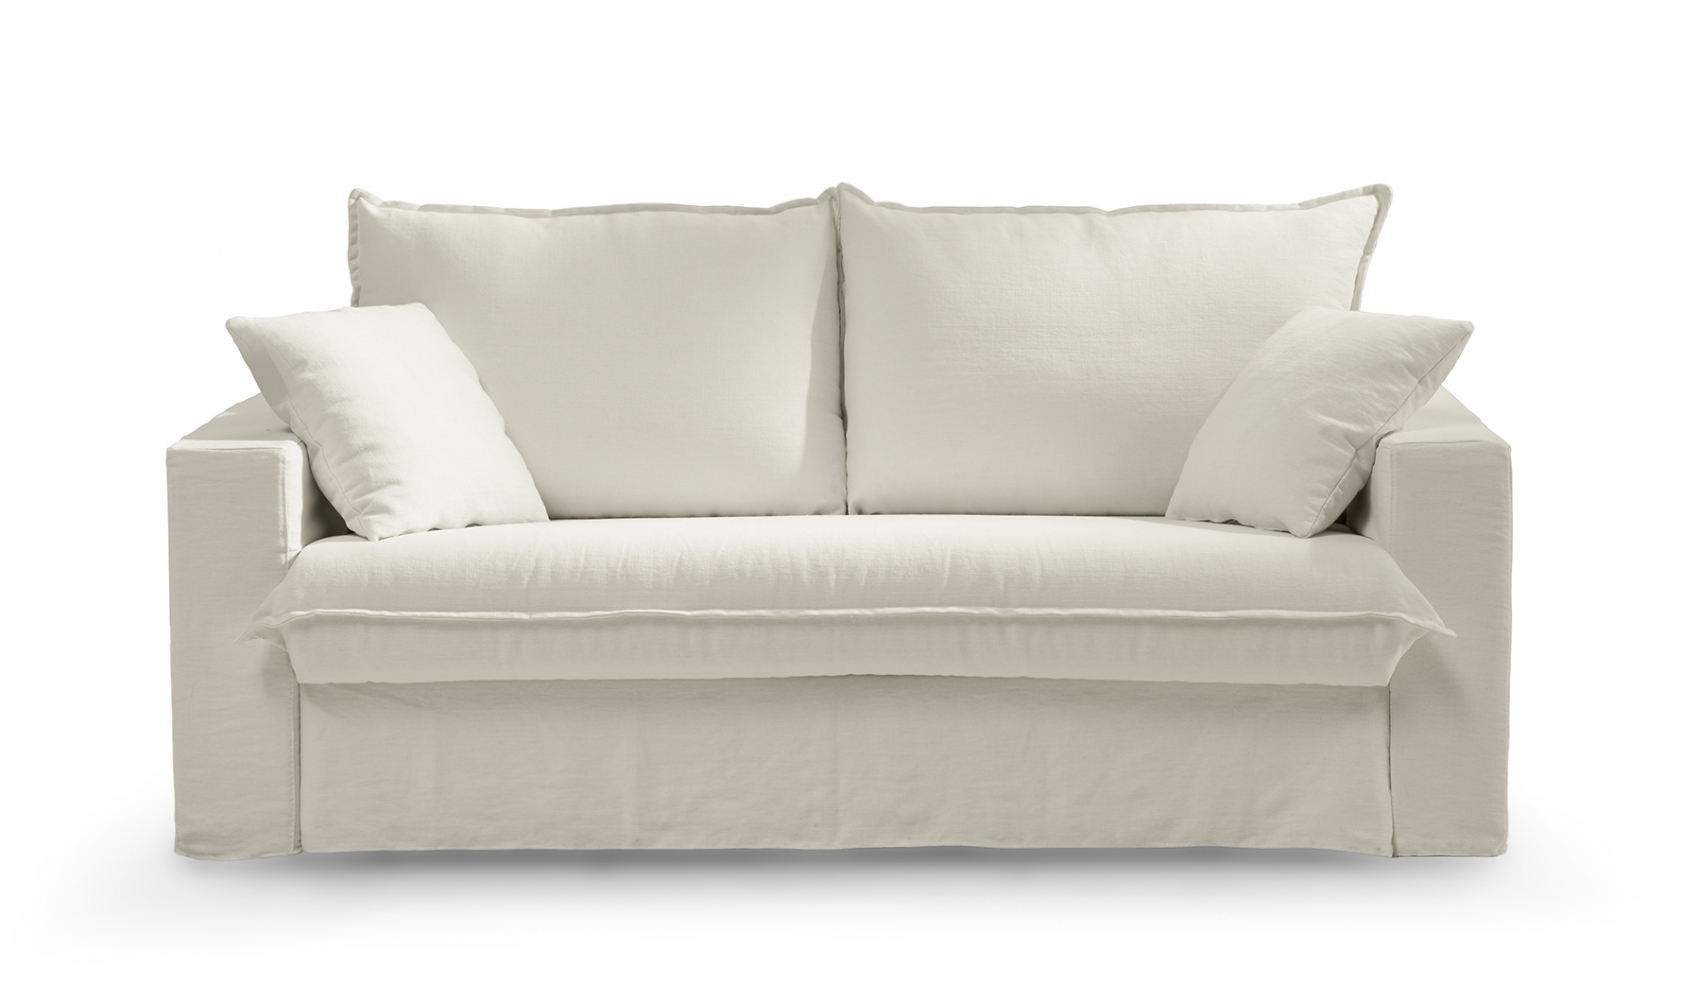 Nadir sofa bed